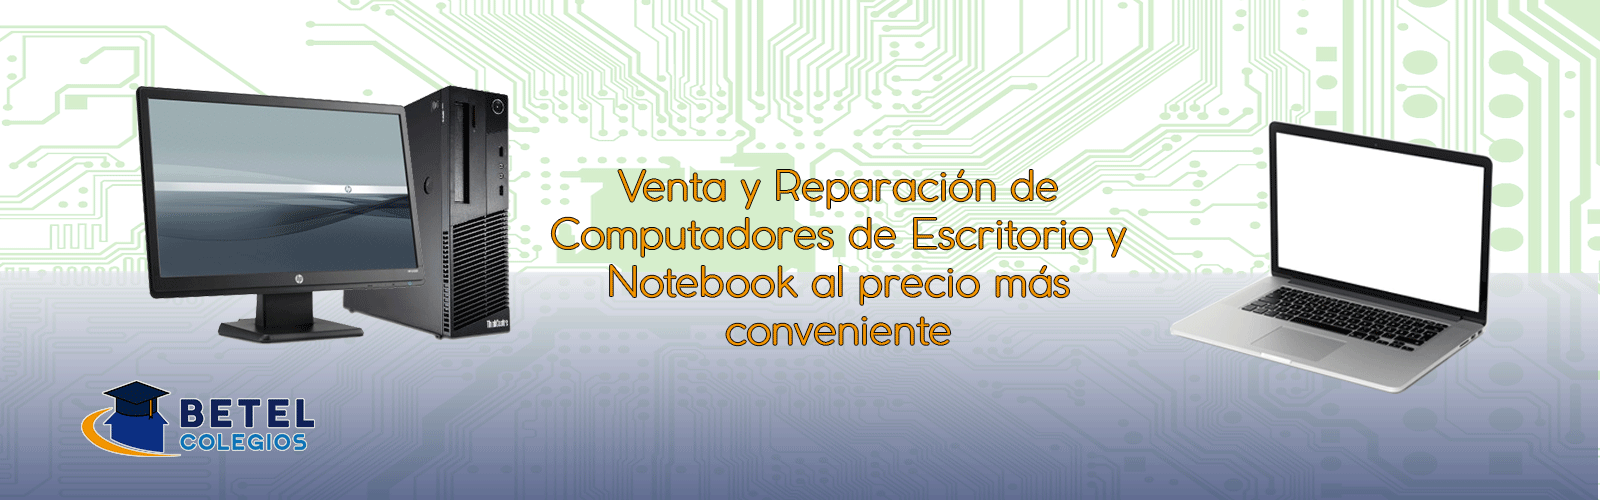 Venta y Reparacion de Computadores